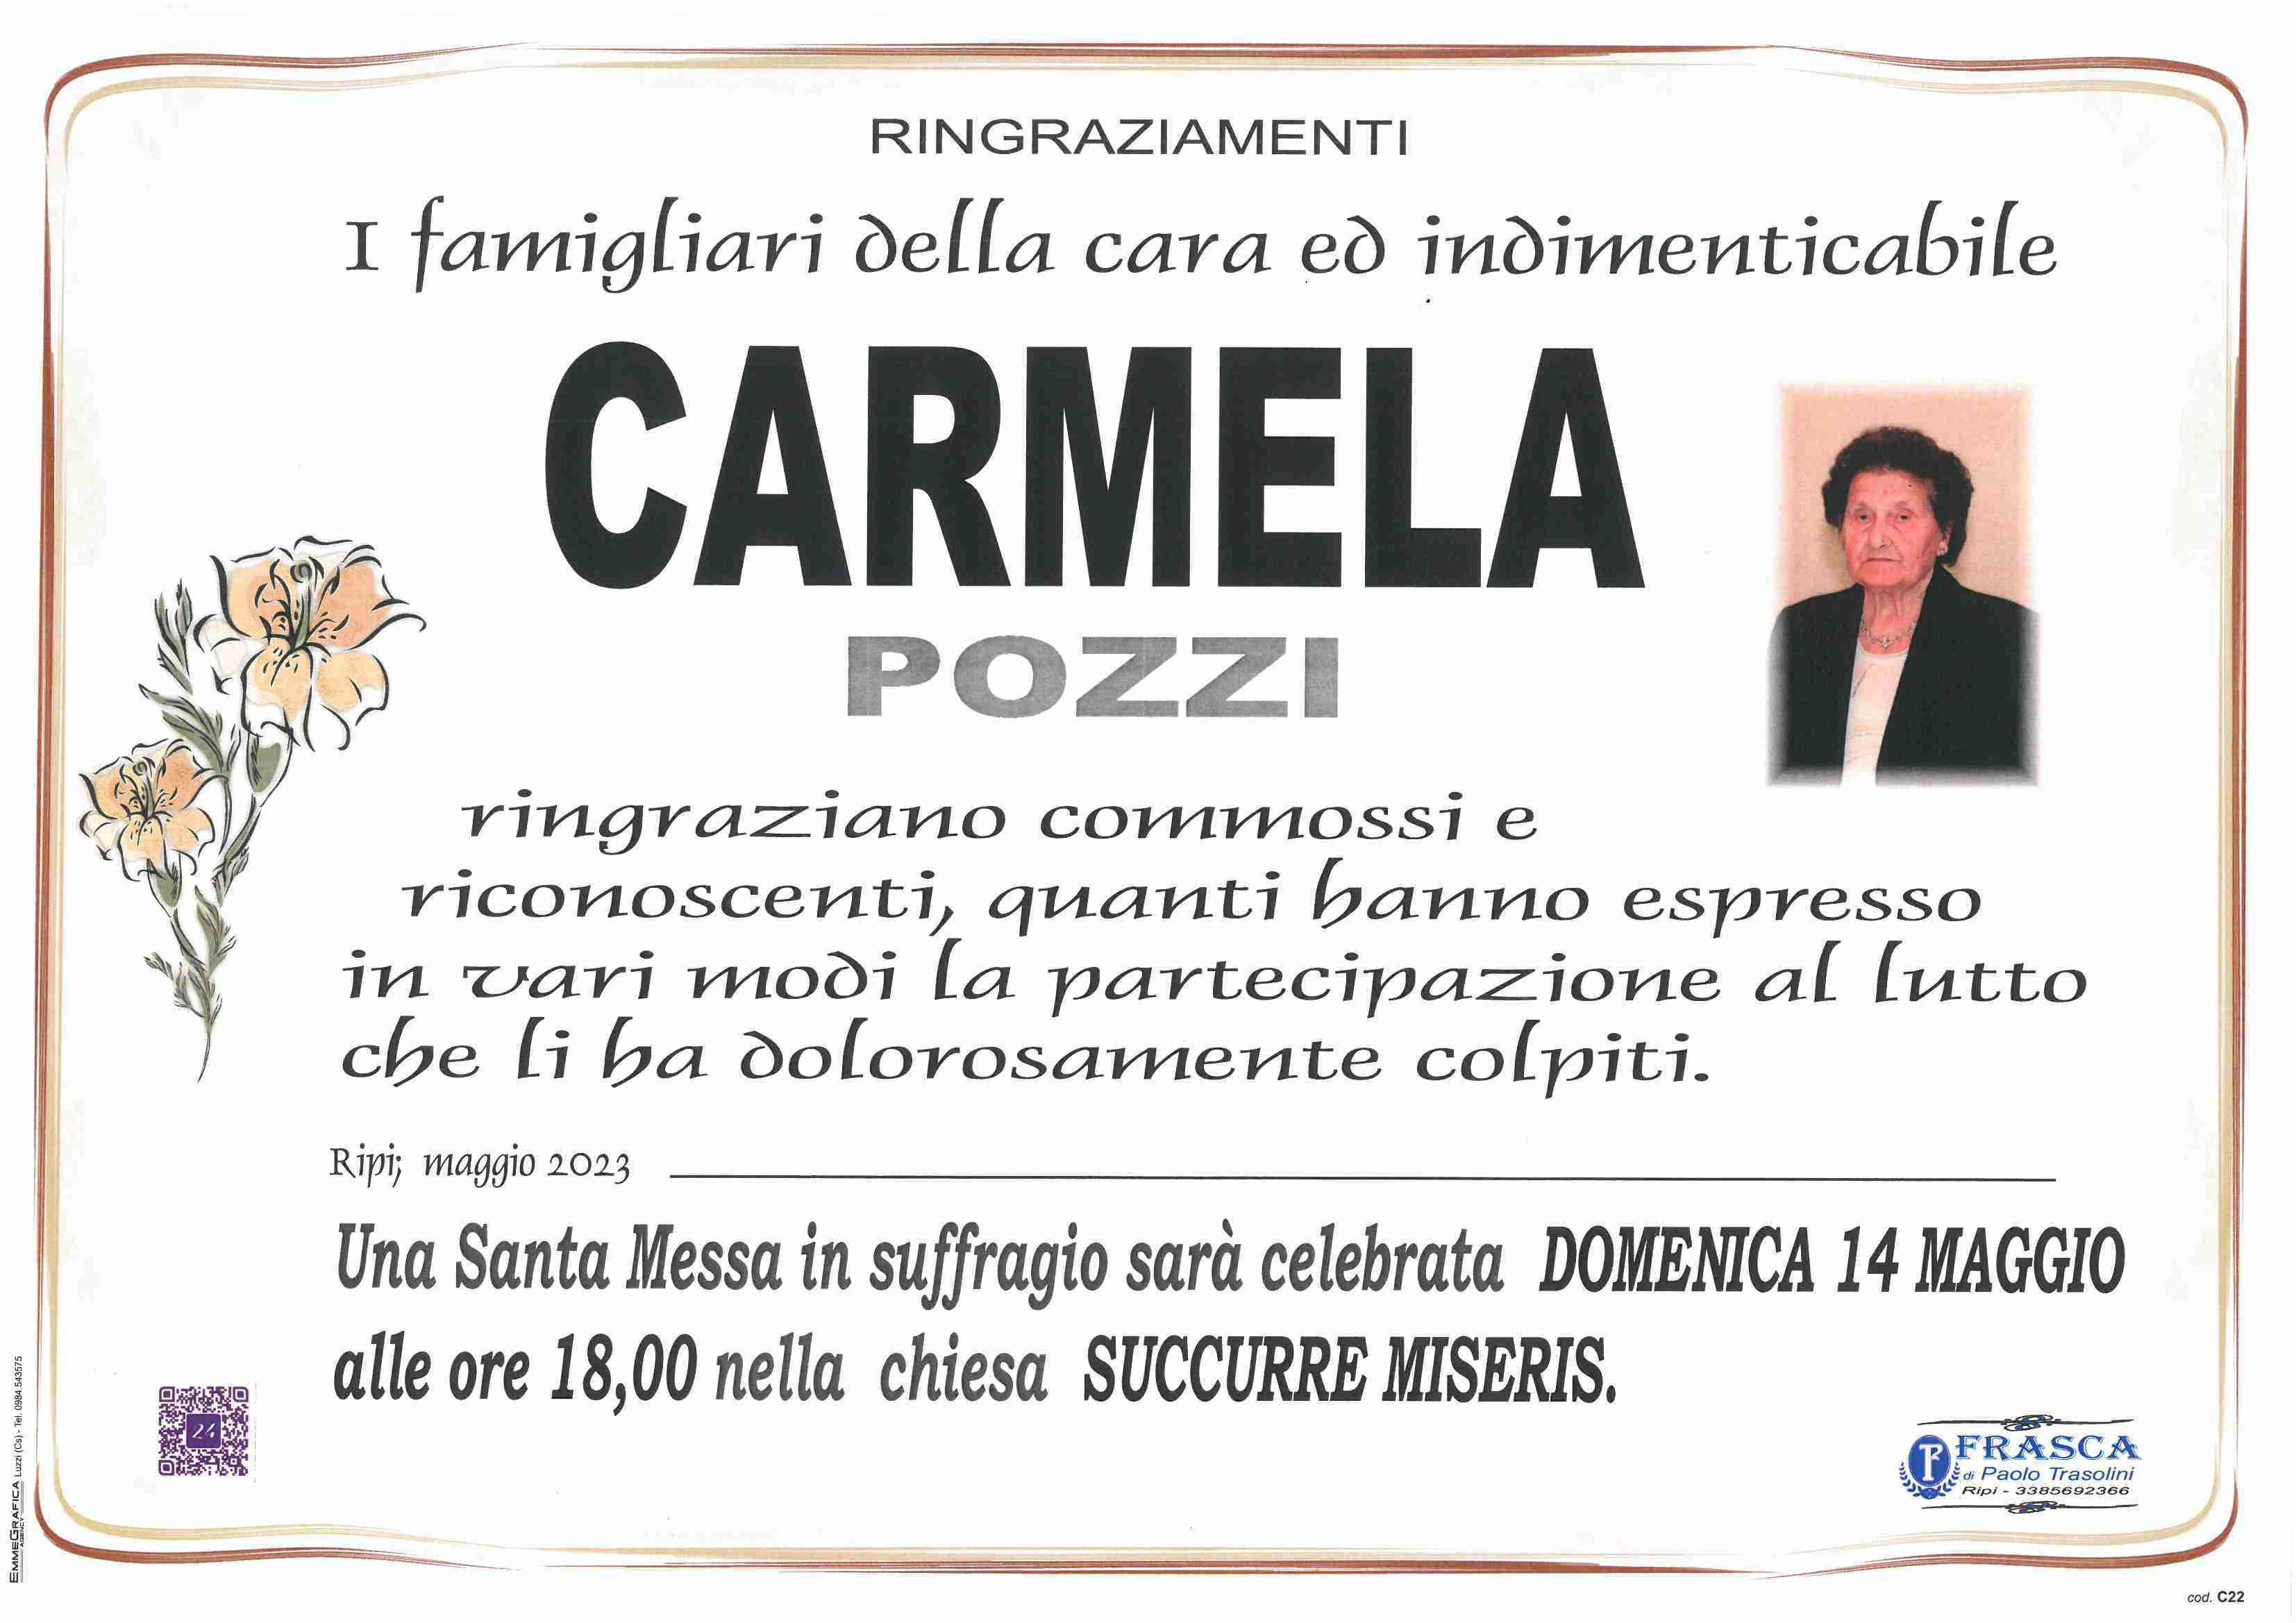 Carmela Pozzi